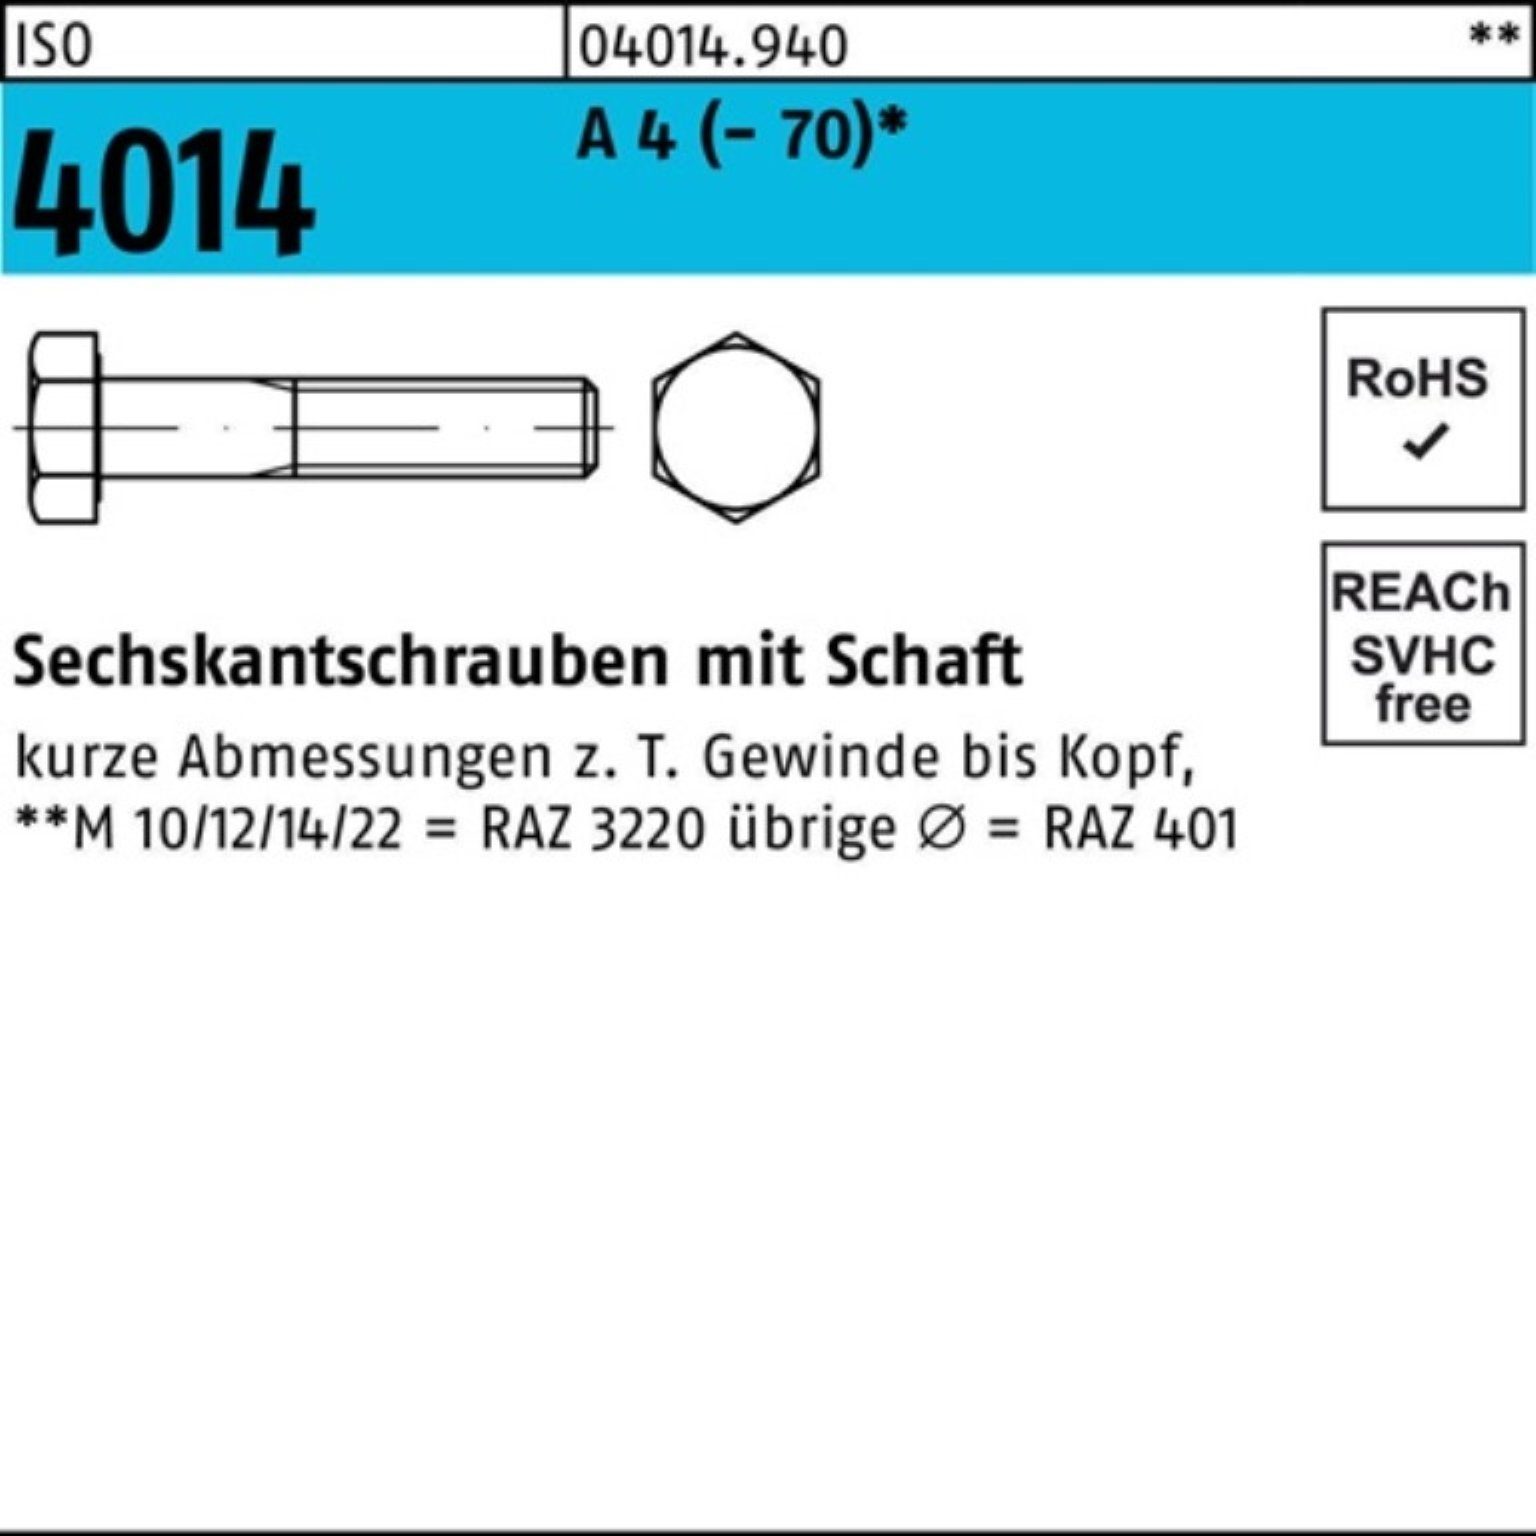 Bufab Sechskantschraube 100er Pack Sechskantschraube ISO 4014 Schaft M10x 190 A 4 (70) 1 St